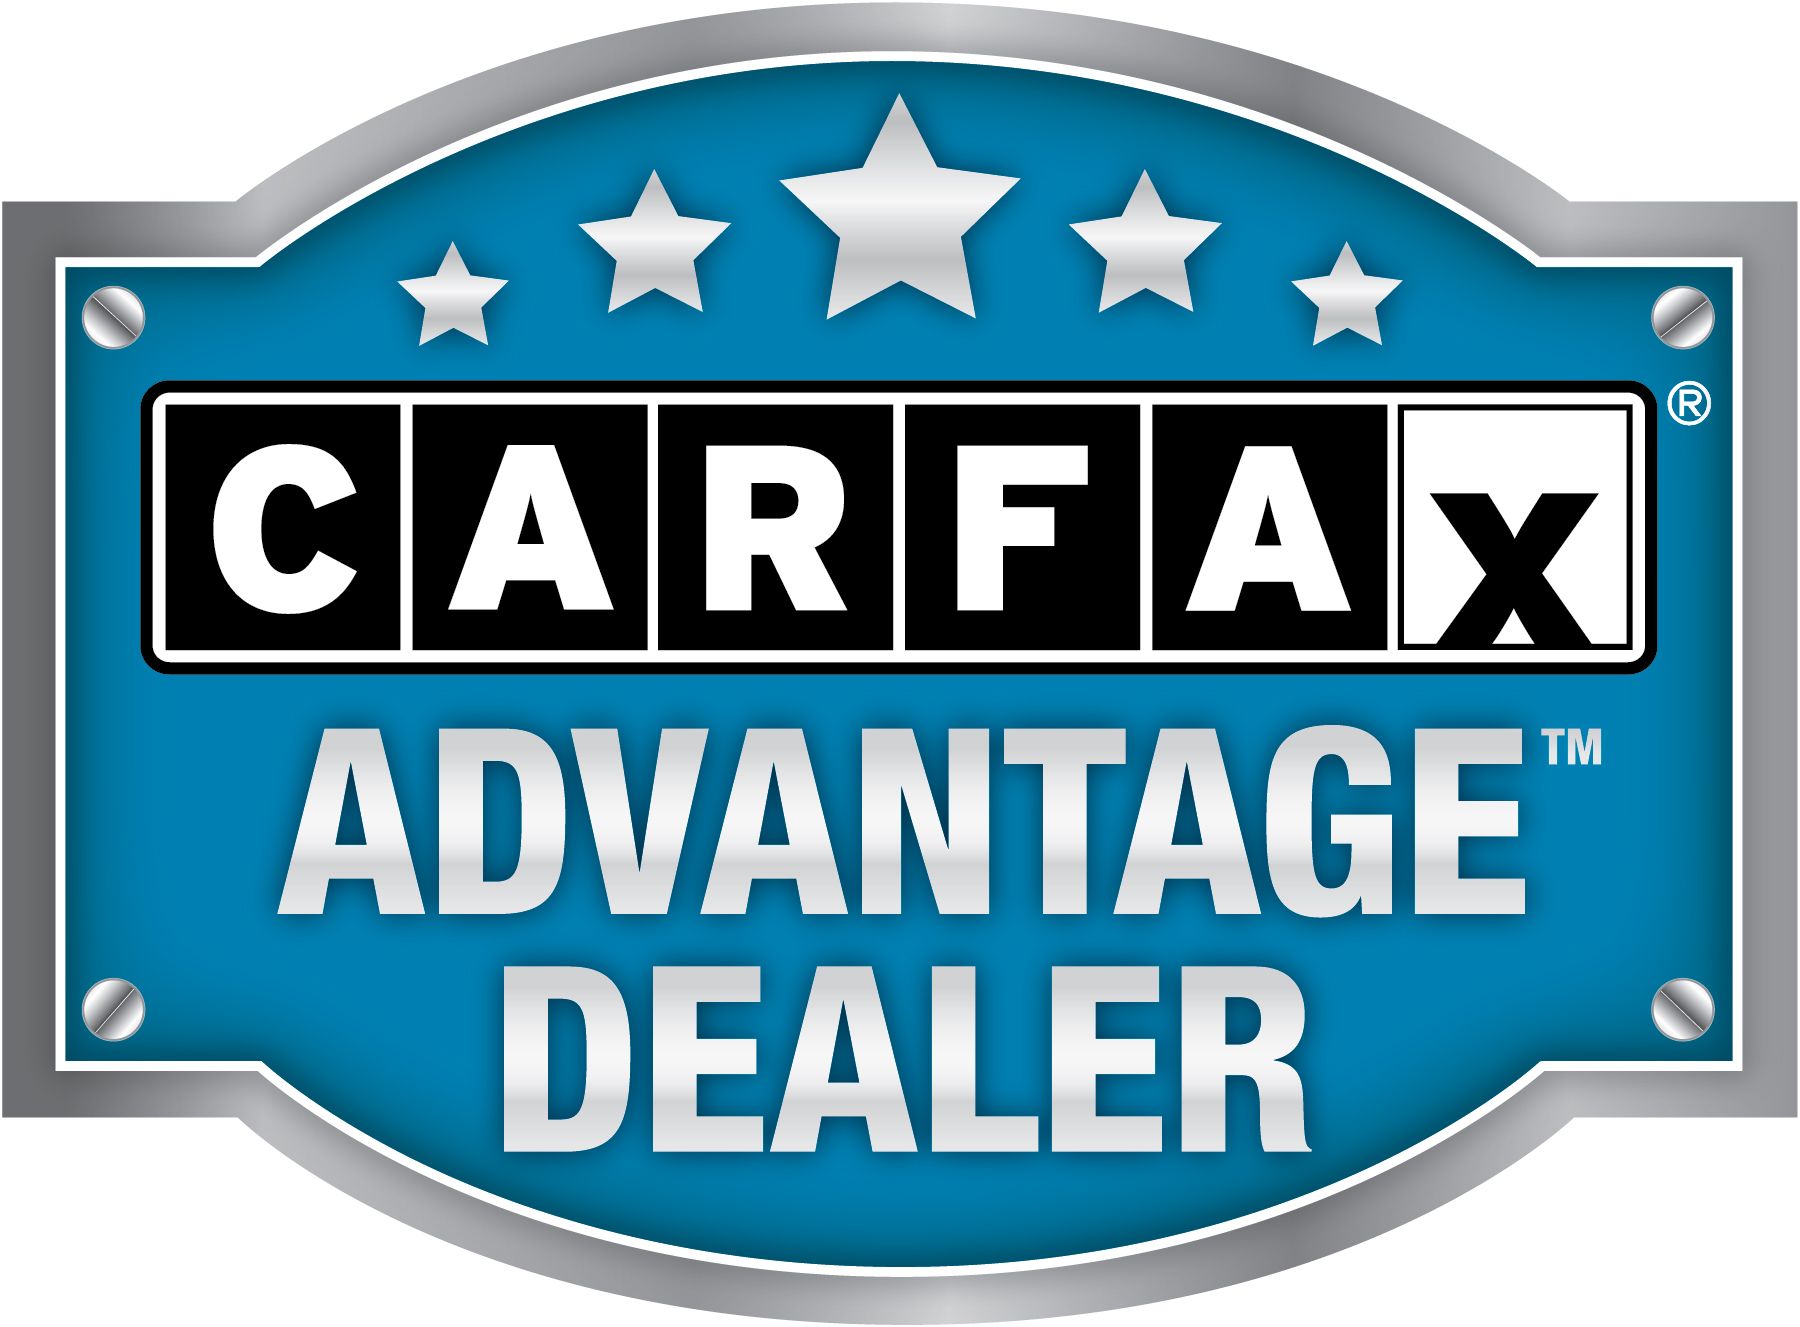 Was ist ein sauberes CarFax?